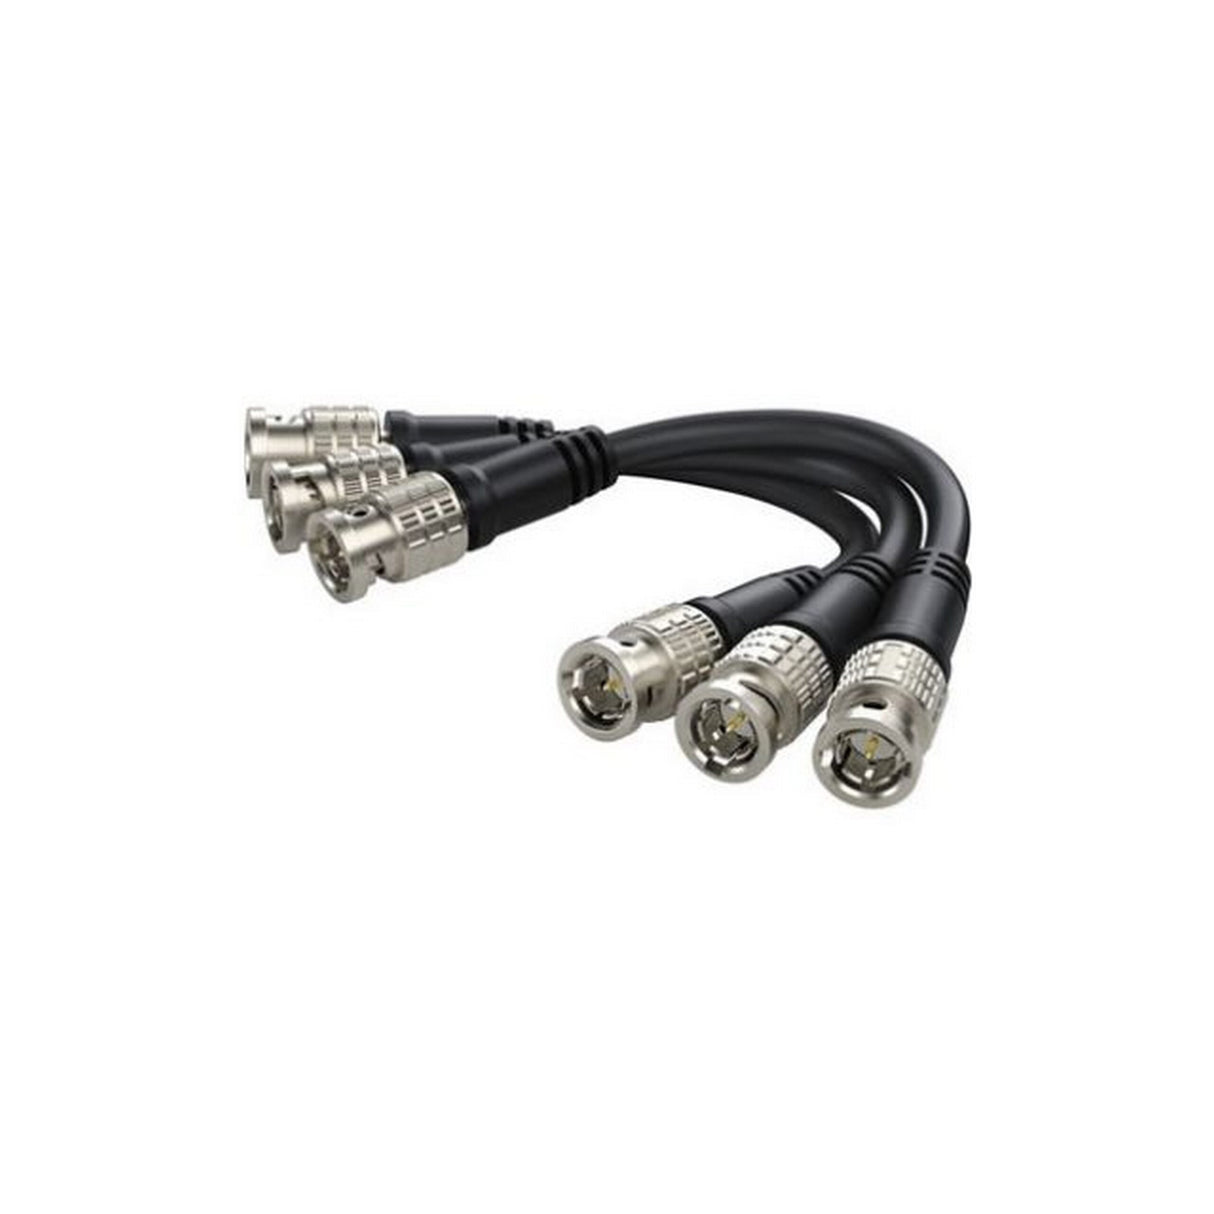 Blackmagic Design 3x BNC Camera Fiber Converter Cable